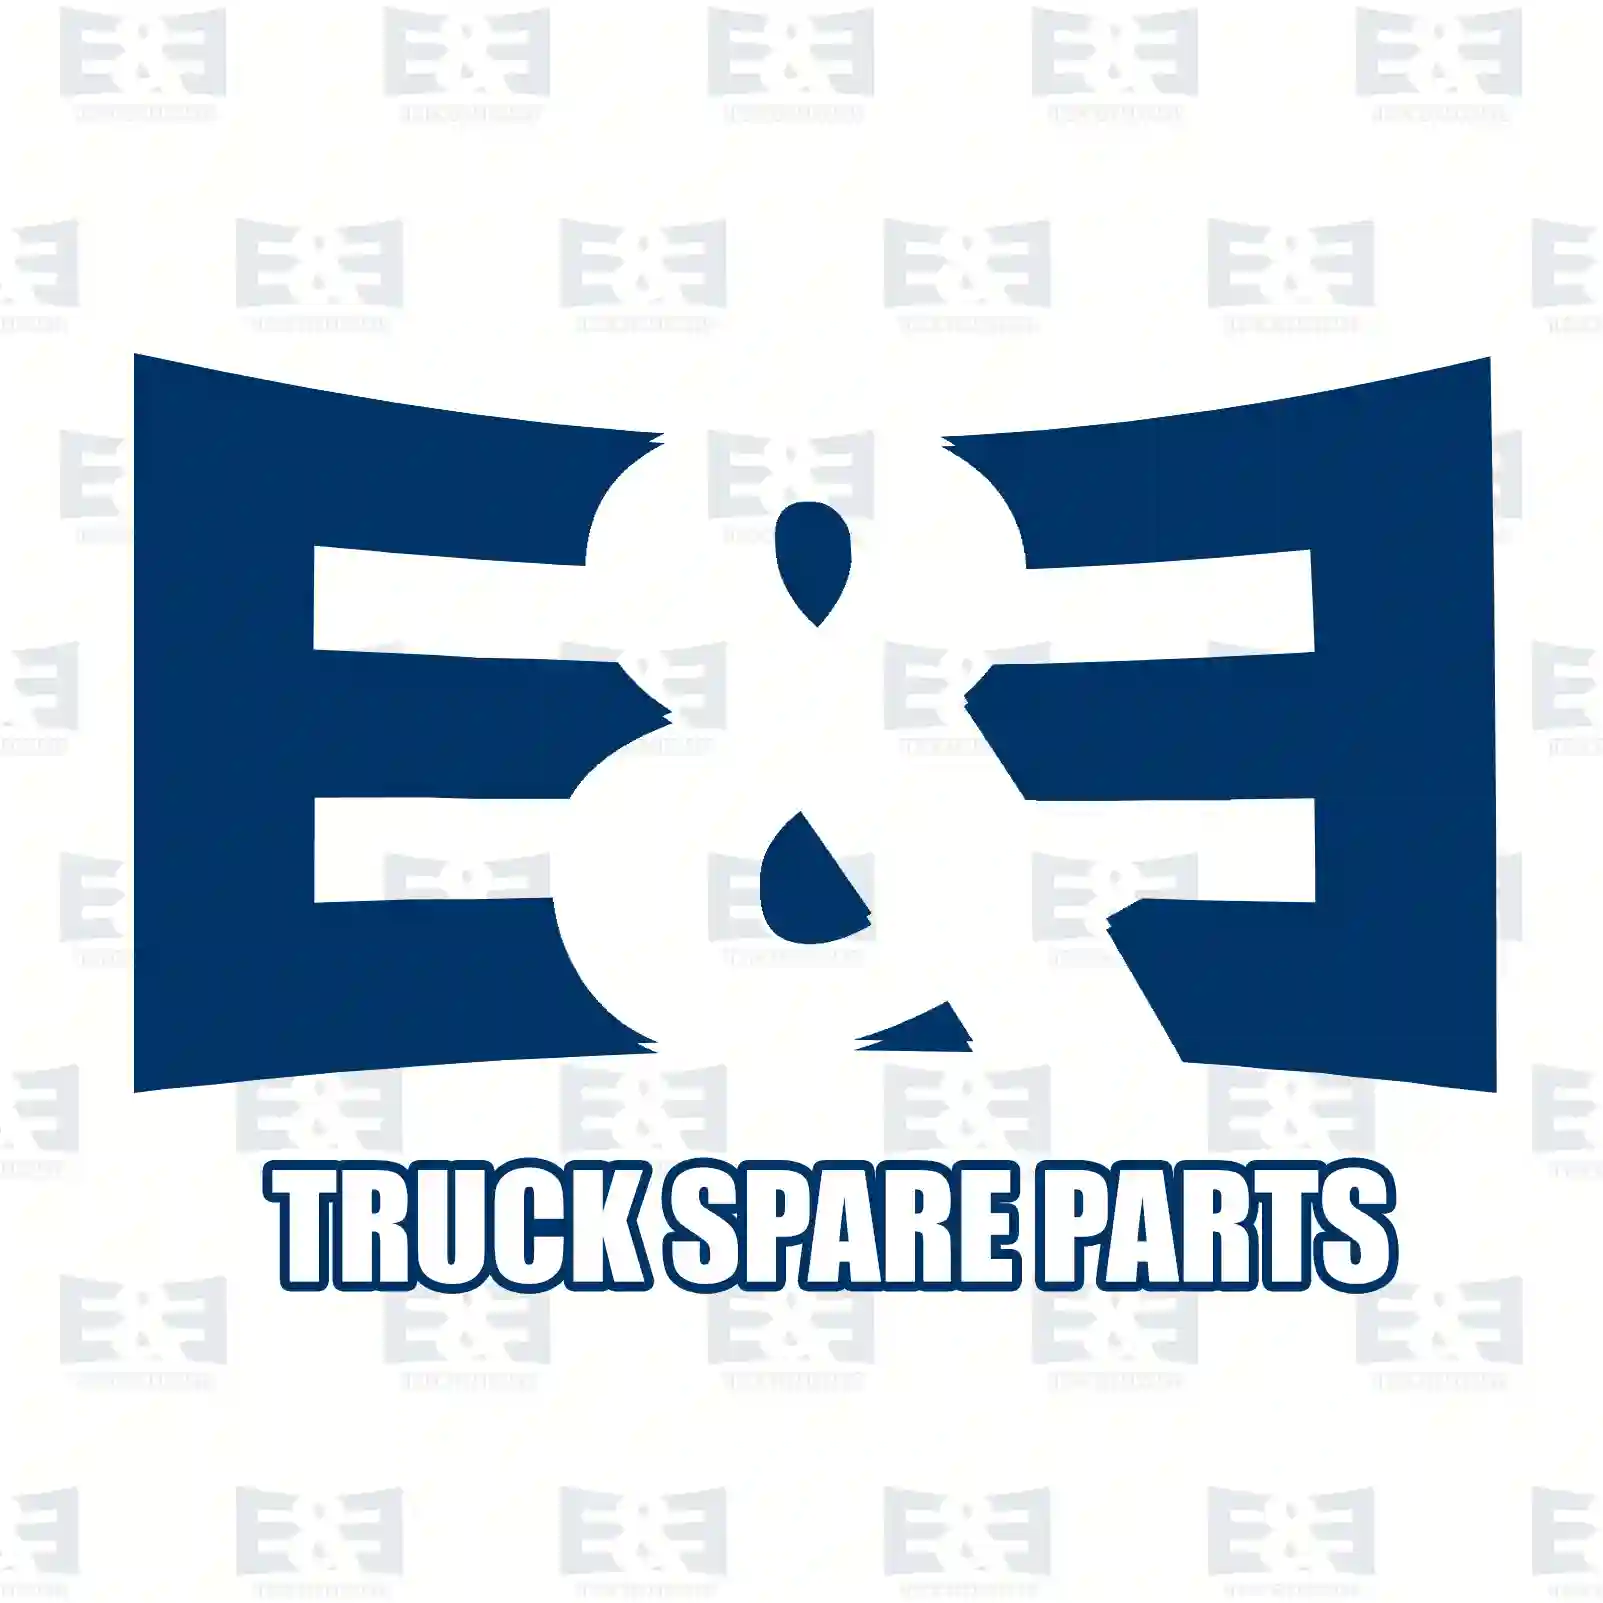 Injection nozzle, 2E2286518, 03L130277J, 03L130277Q, 03L130277J, 03L130277Q, 03L130277J, 03L130277Q, 03L130277J, 03L130277Q ||  2E2286518 E&E Truck Spare Parts | Truck Spare Parts, Auotomotive Spare Parts Injection nozzle, 2E2286518, 03L130277J, 03L130277Q, 03L130277J, 03L130277Q, 03L130277J, 03L130277Q, 03L130277J, 03L130277Q ||  2E2286518 E&E Truck Spare Parts | Truck Spare Parts, Auotomotive Spare Parts